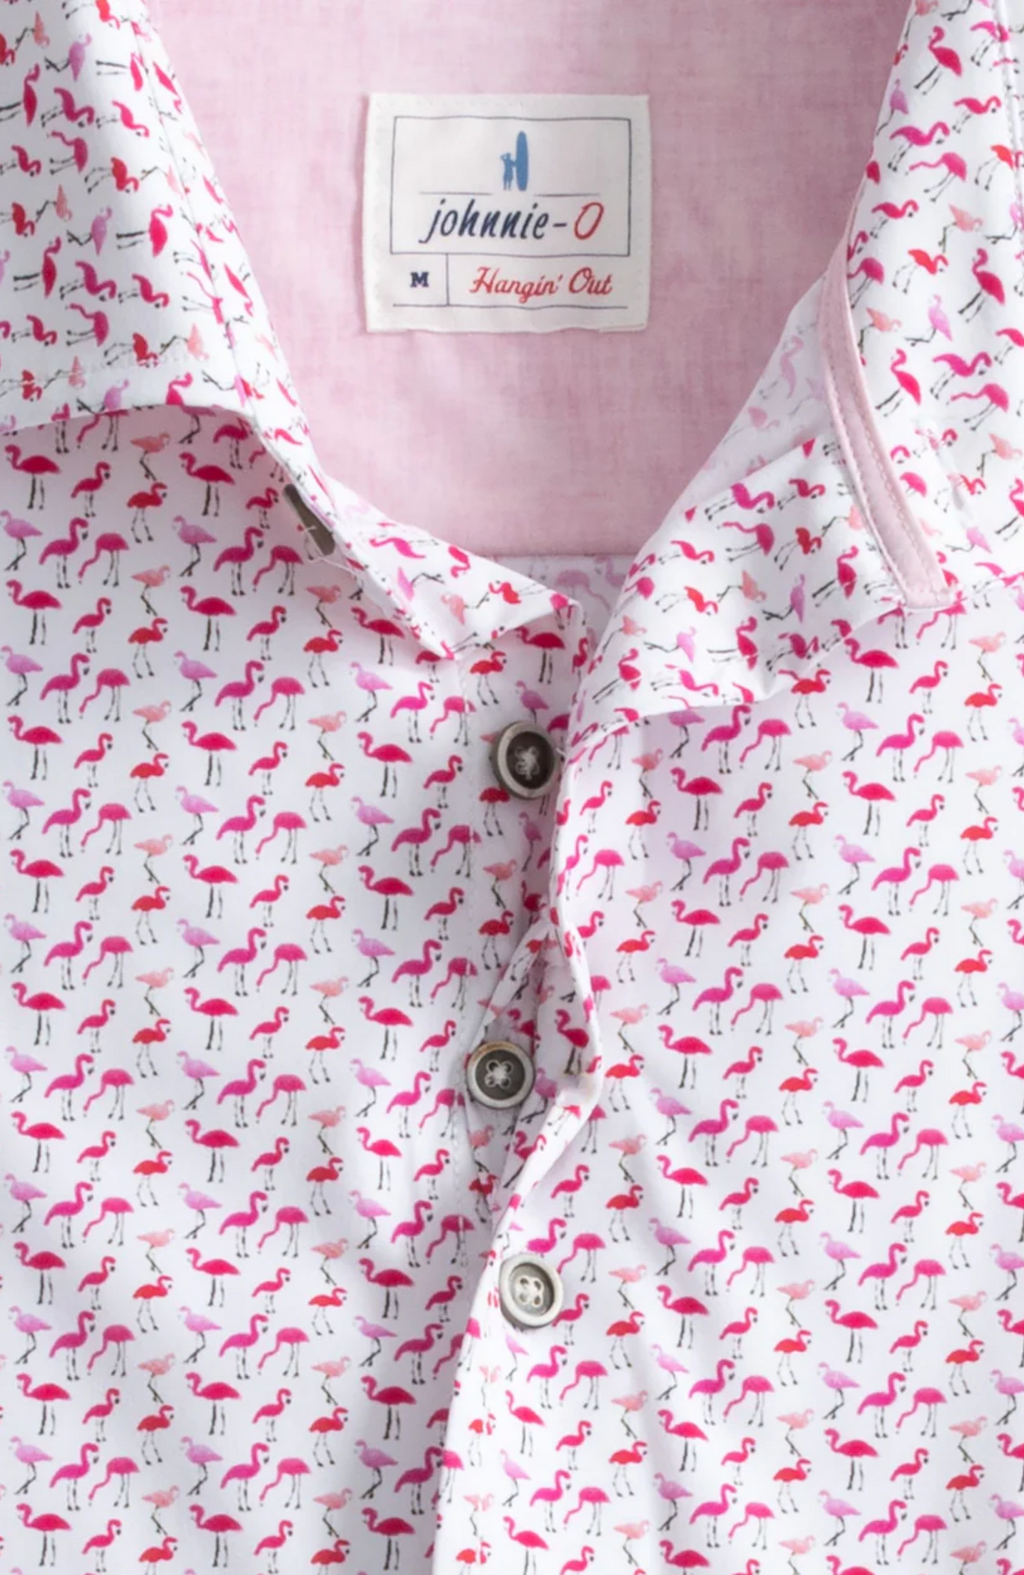 Johnnie-O - Fritz Jersey Knit Button Up Shirt